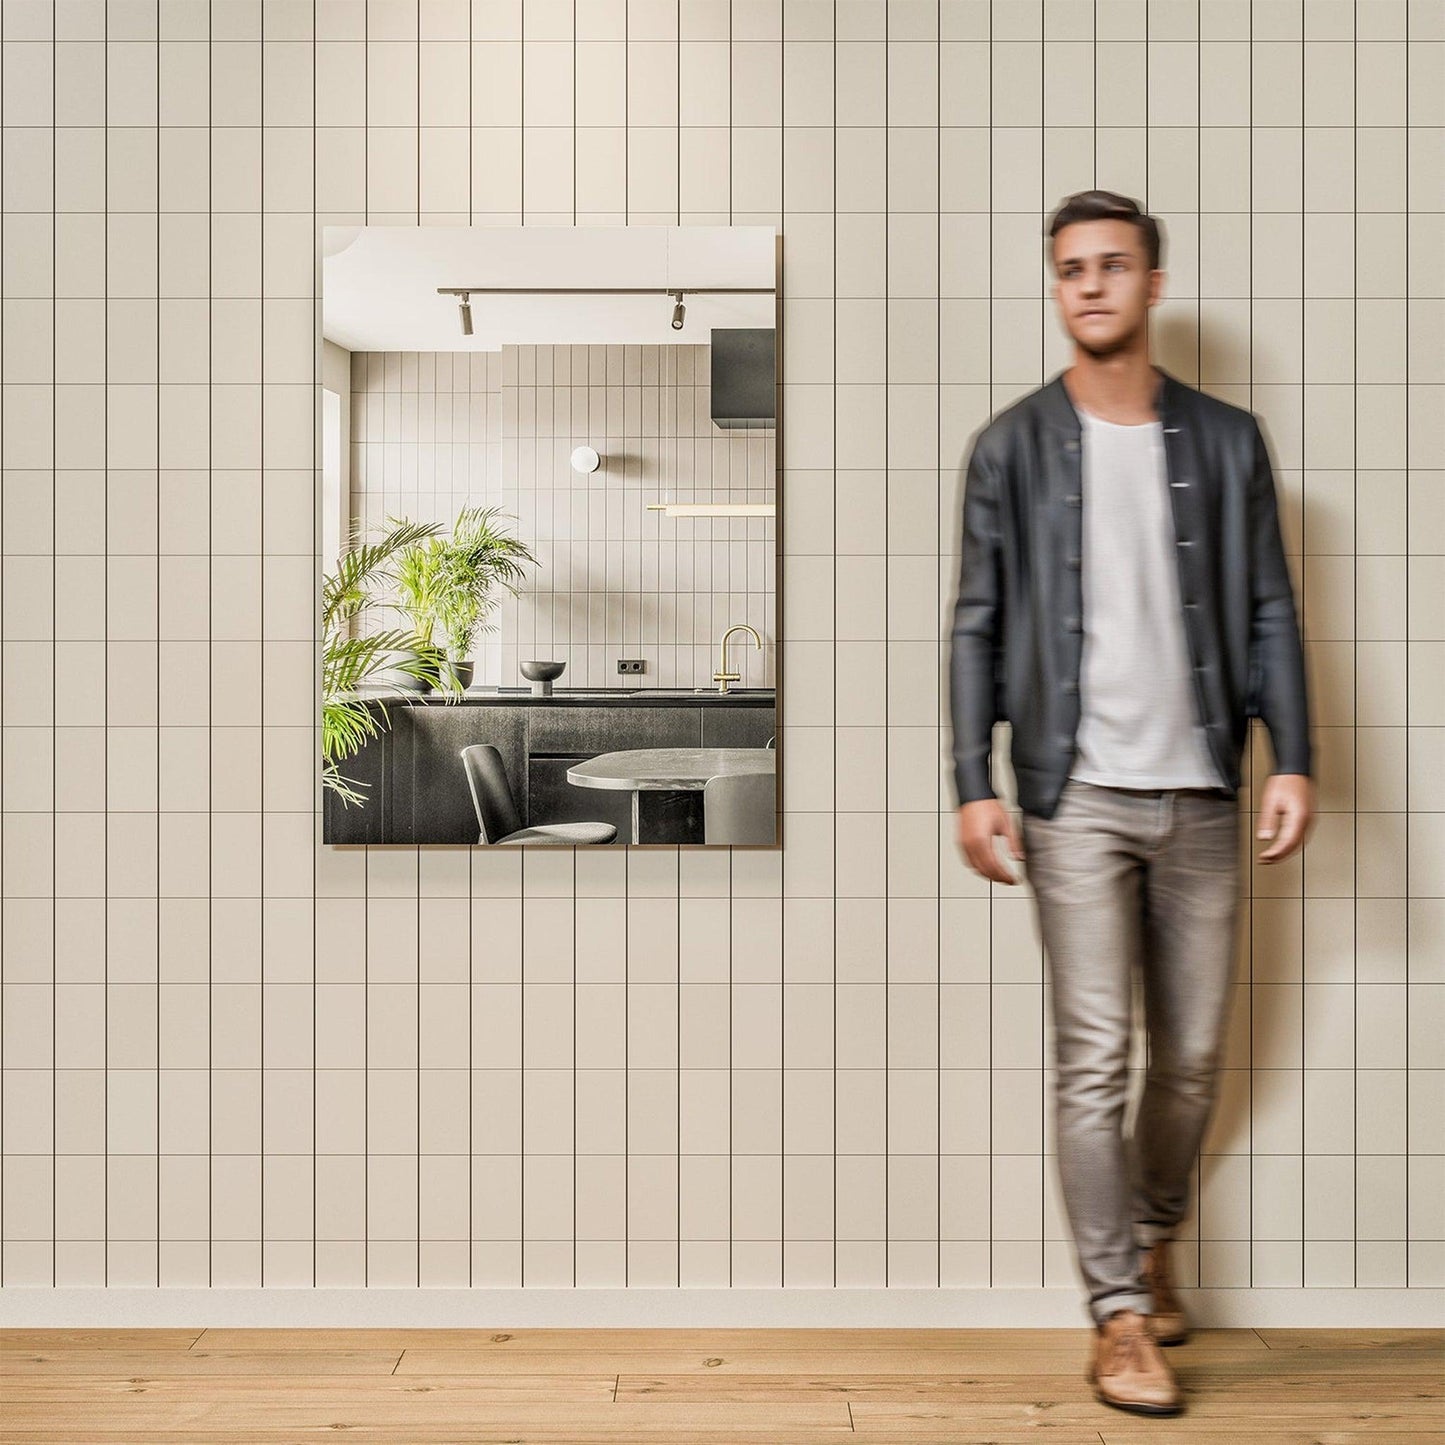 Eviva Sleek 24" x 30" Frameless Bathroom Wall-Mounted Mirror